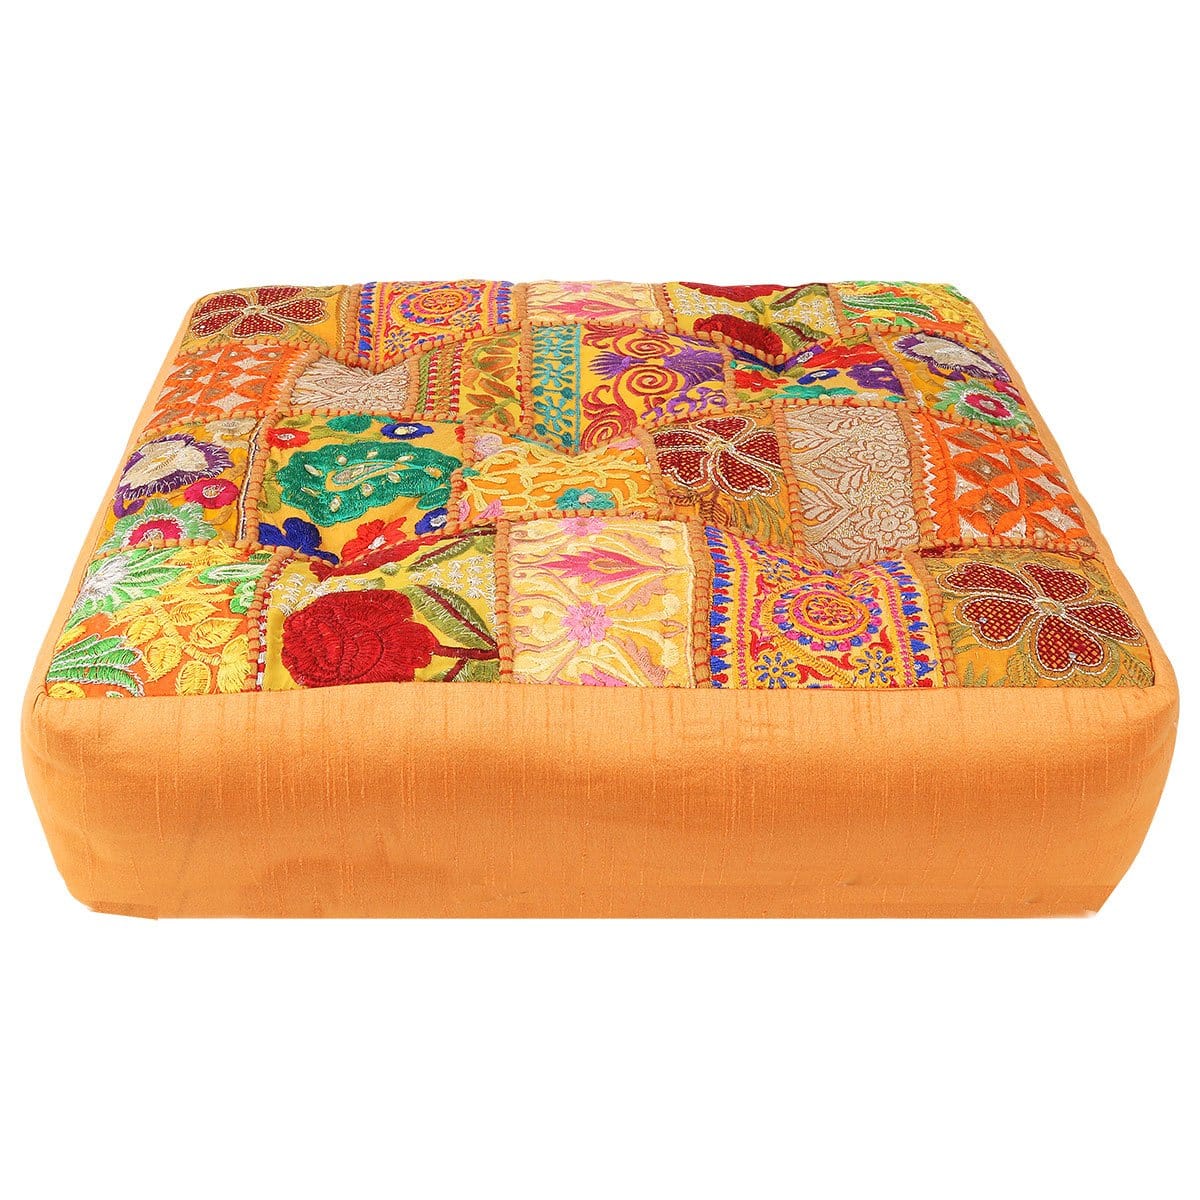 Wholesale Manali Meditation Cushion